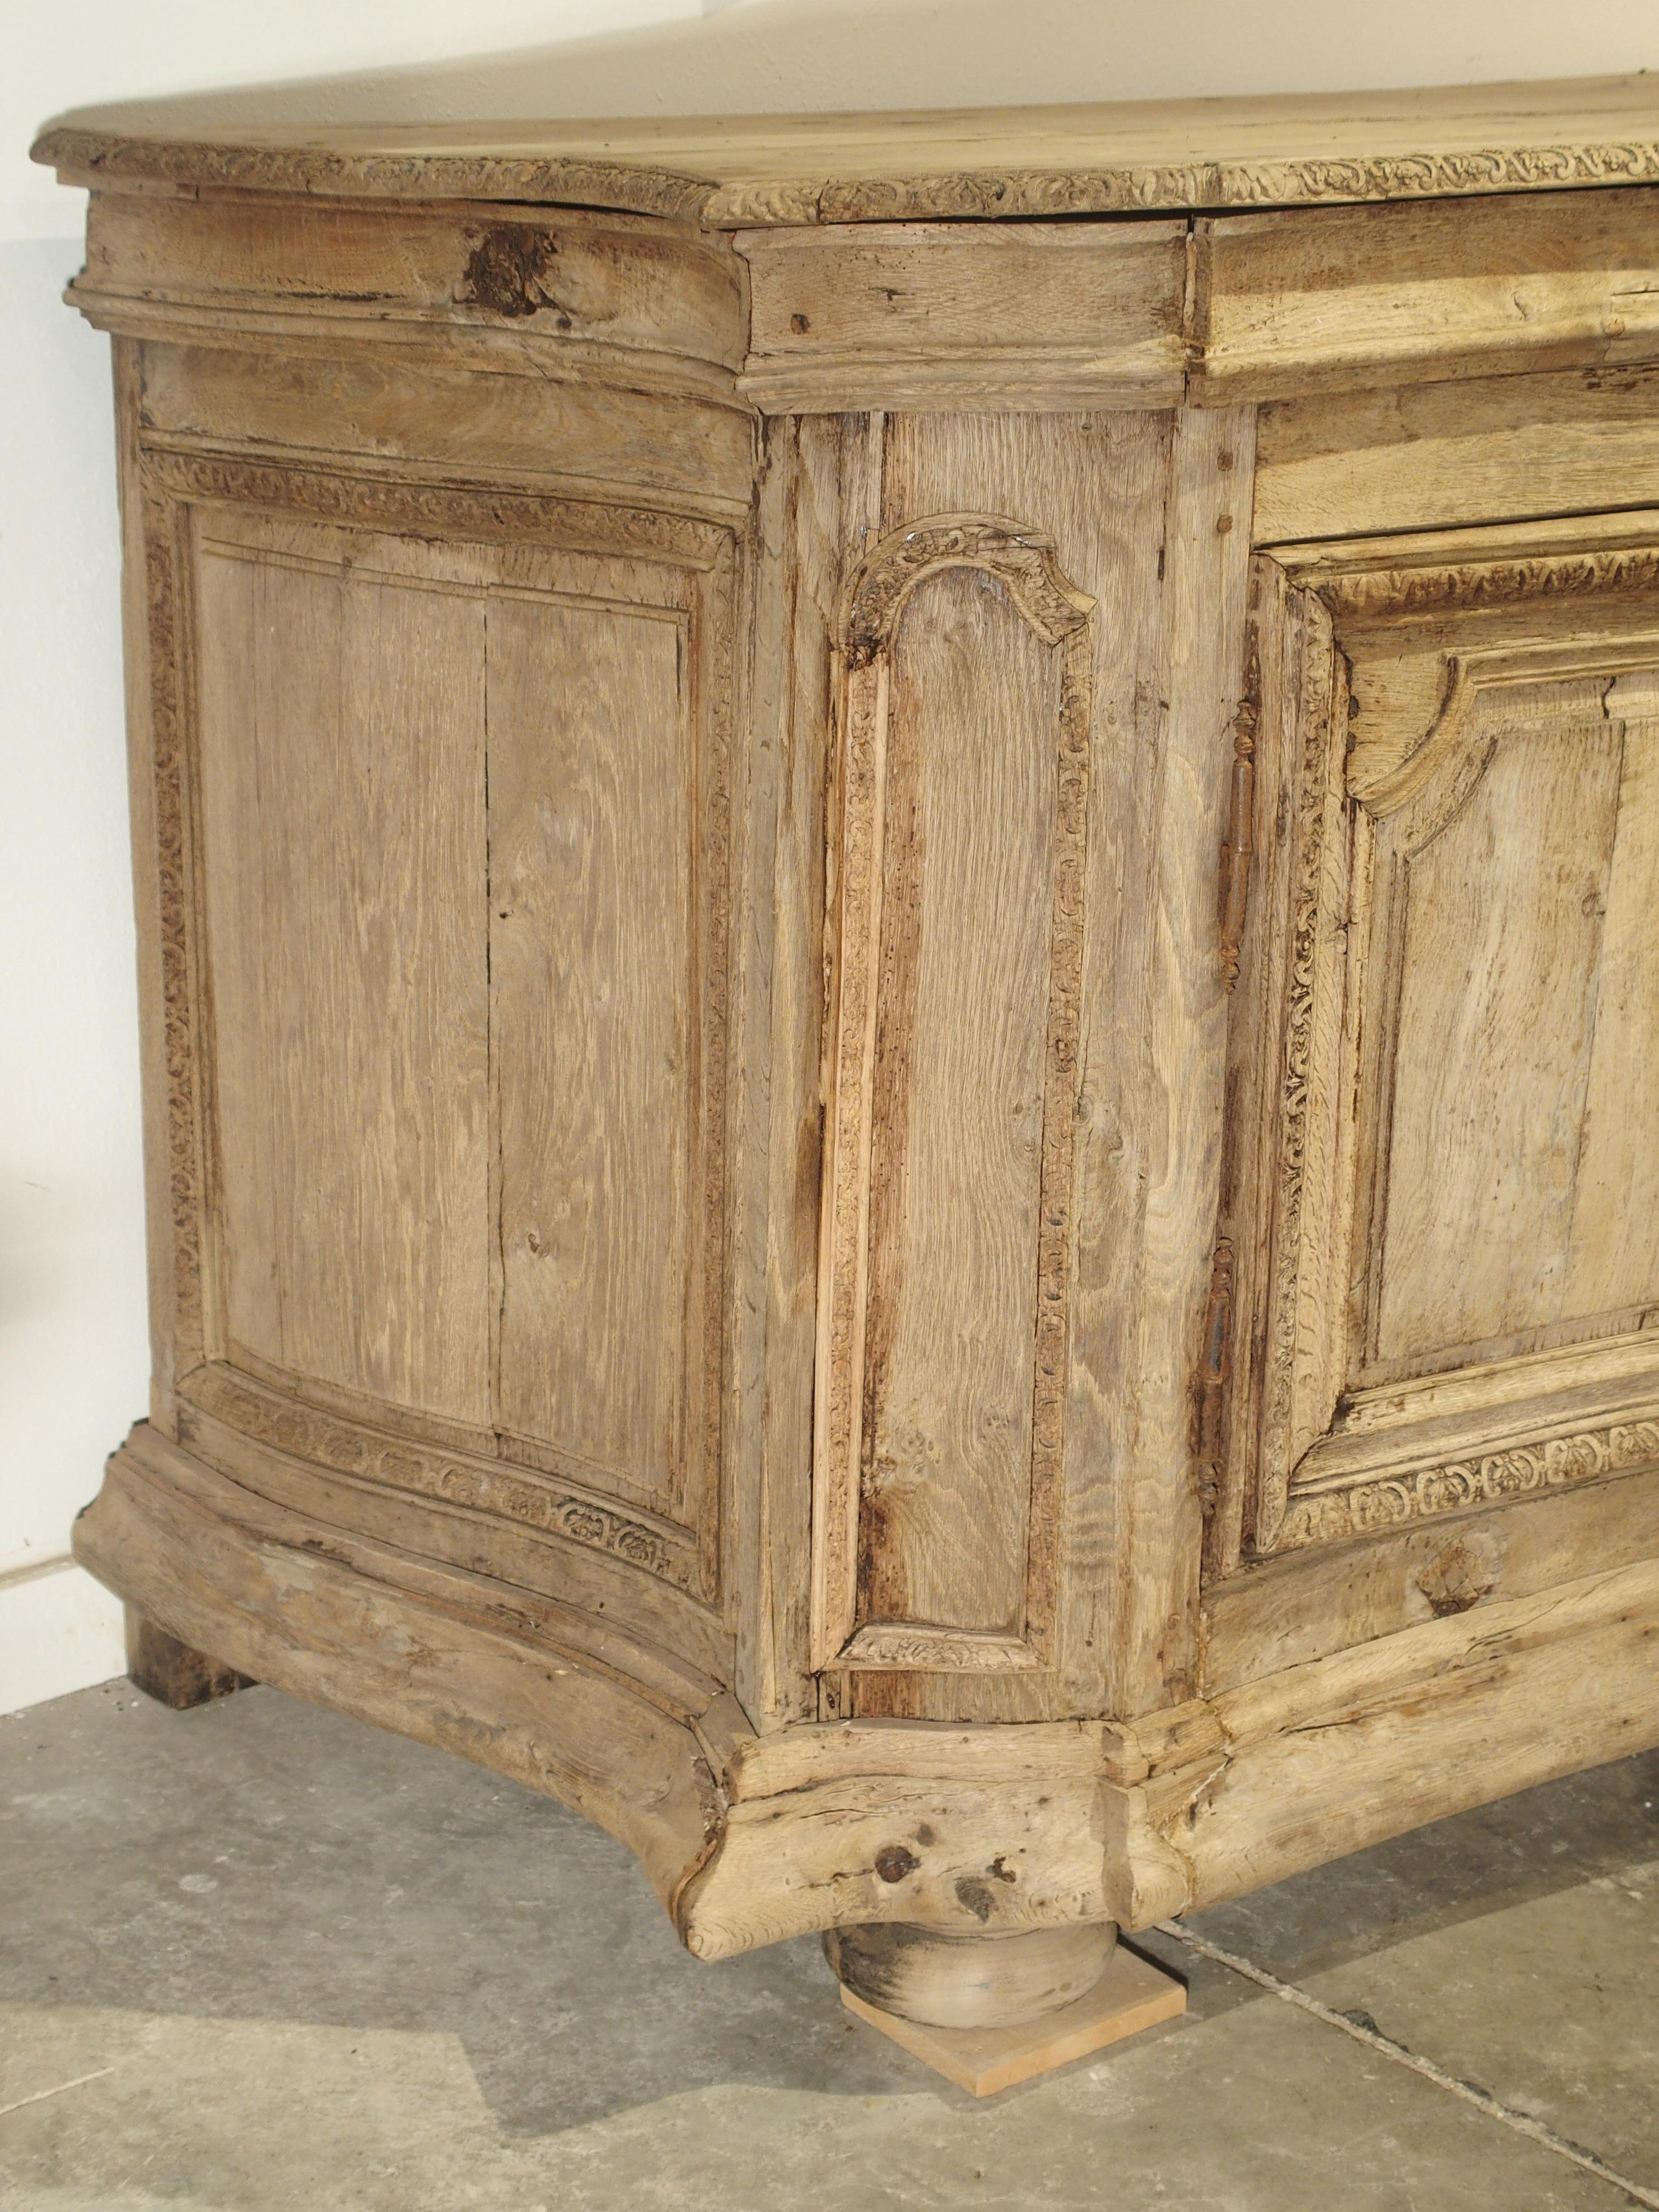 Ce fabuleux buffet d'époque Louis XIV (le Roi Soleil) a été fabriqué en chêne européen et décapé à un moment donné de son histoire. Sous le règne de Louis XIV (1643-1715), les fabricants de meubles considéraient le chêne comme le bois par excellence